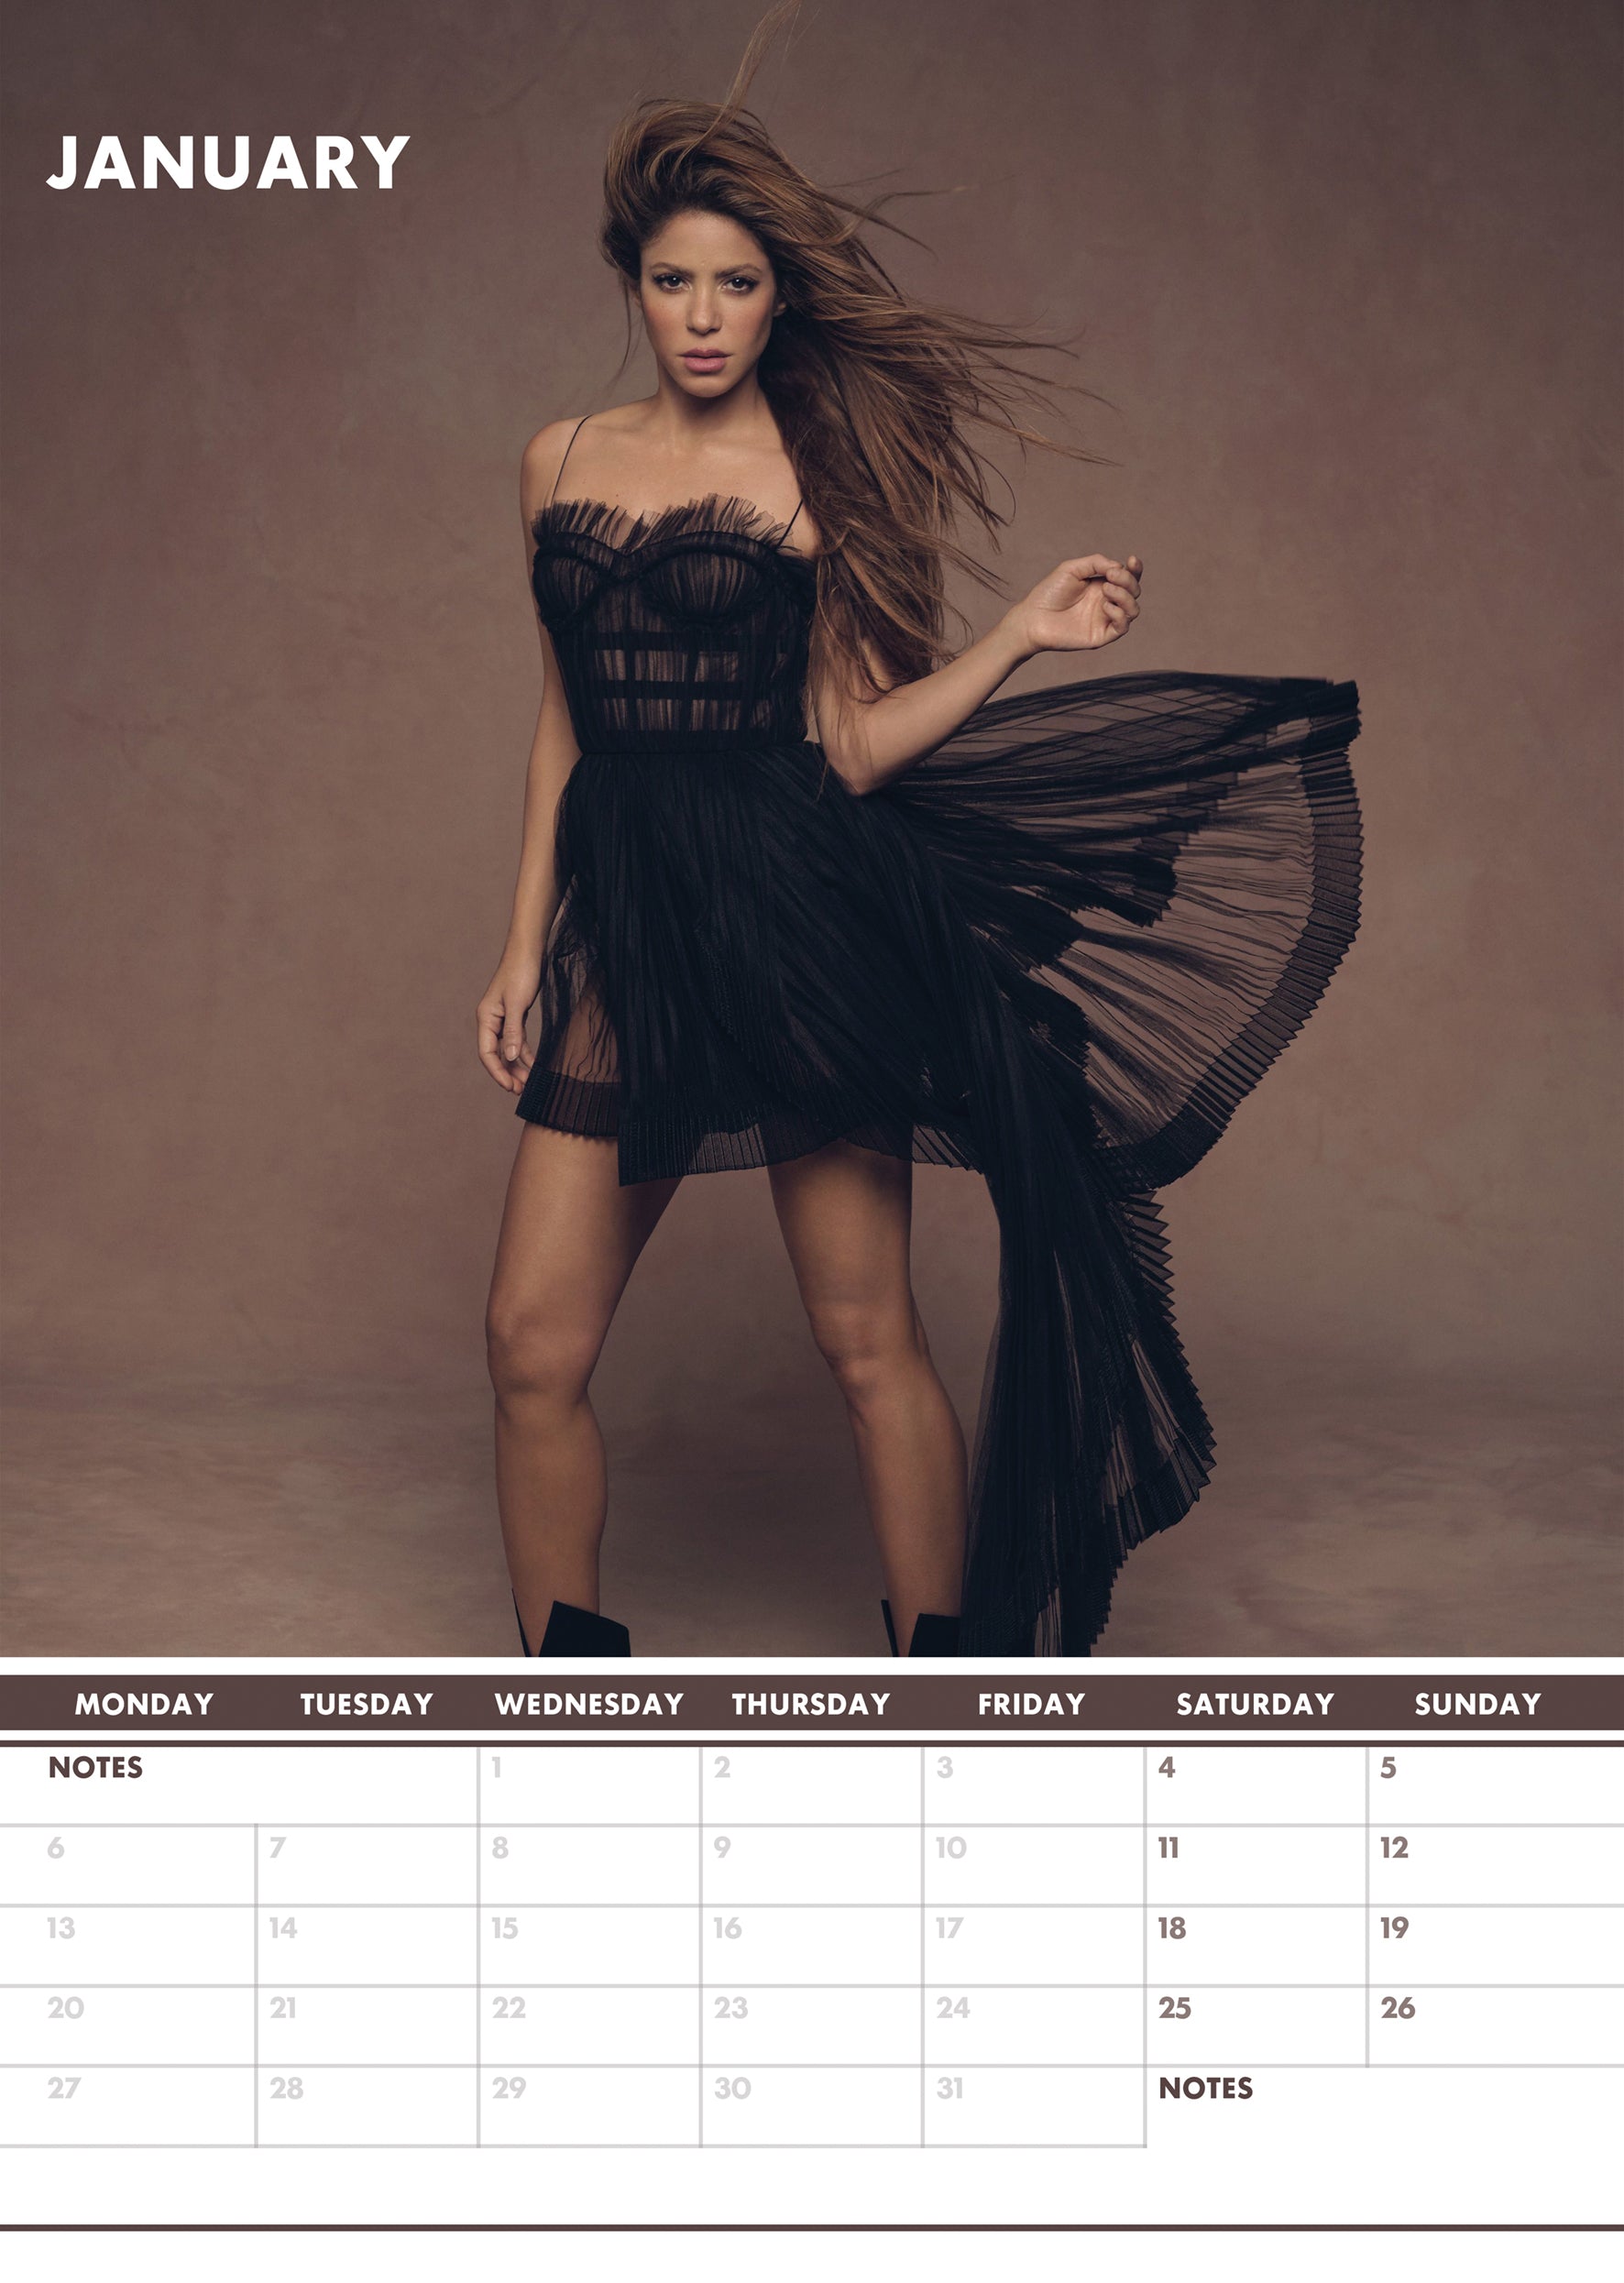 2025 Shakira - A3 Wall Calendar